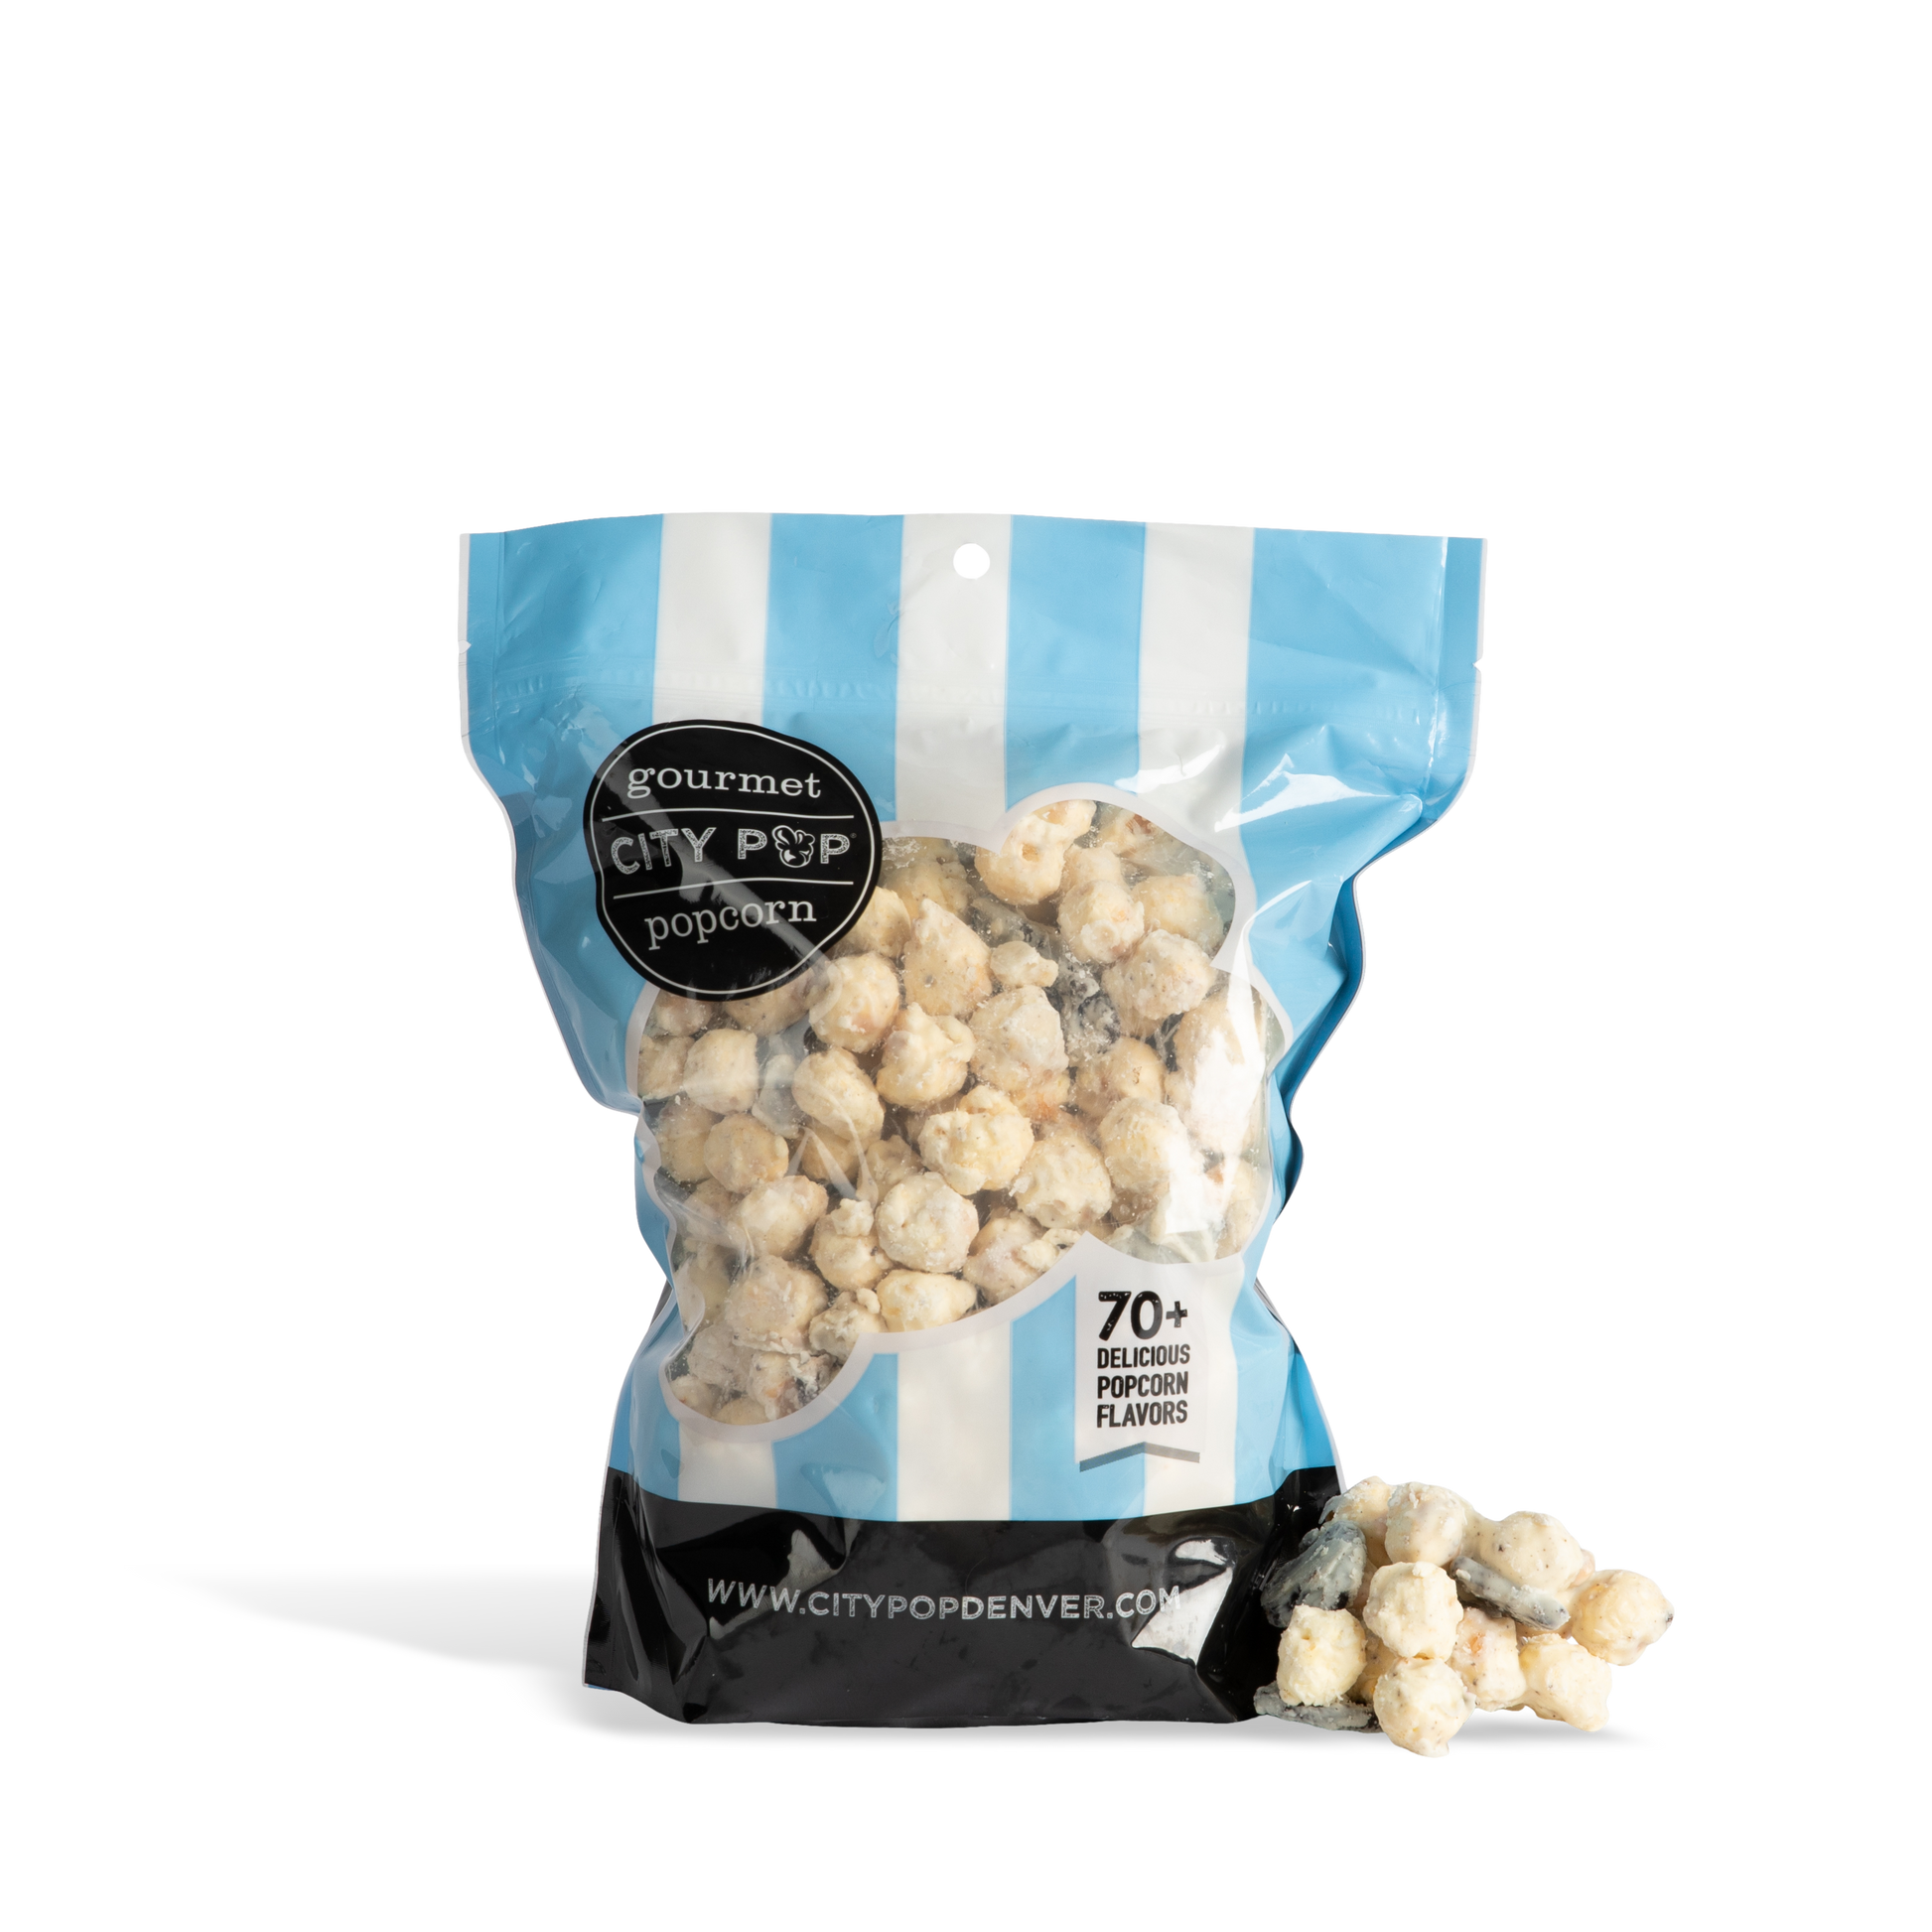 City Pop Cookies 'N Cream Popcorn Bag with Kernel